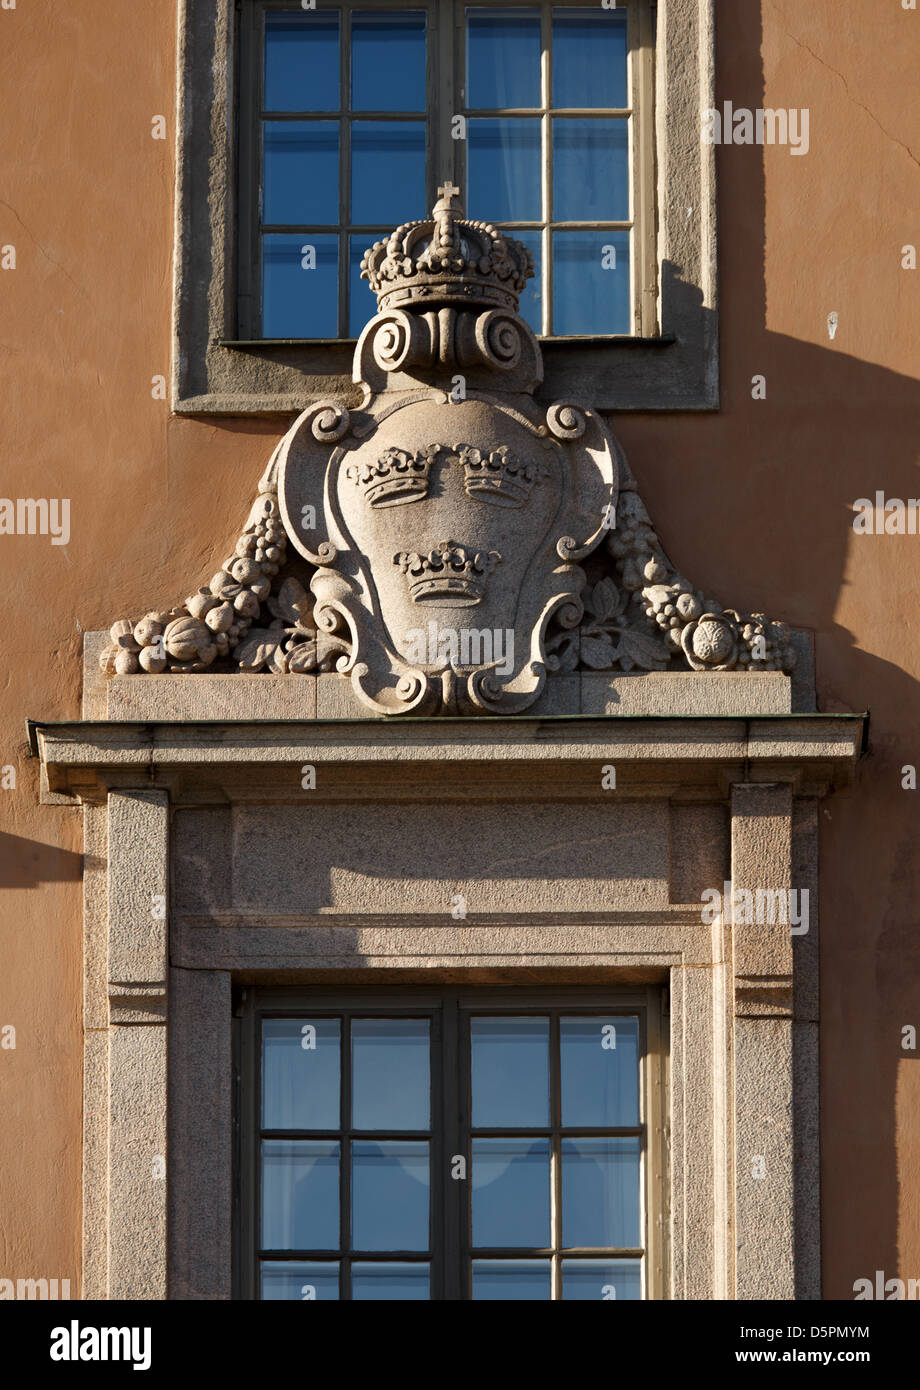 Le Royal Coat-of-Arms avec trois couronnes ornent la façade de l'ambassade du Royaume de Suède à Helsinki, en Finlande. Banque D'Images